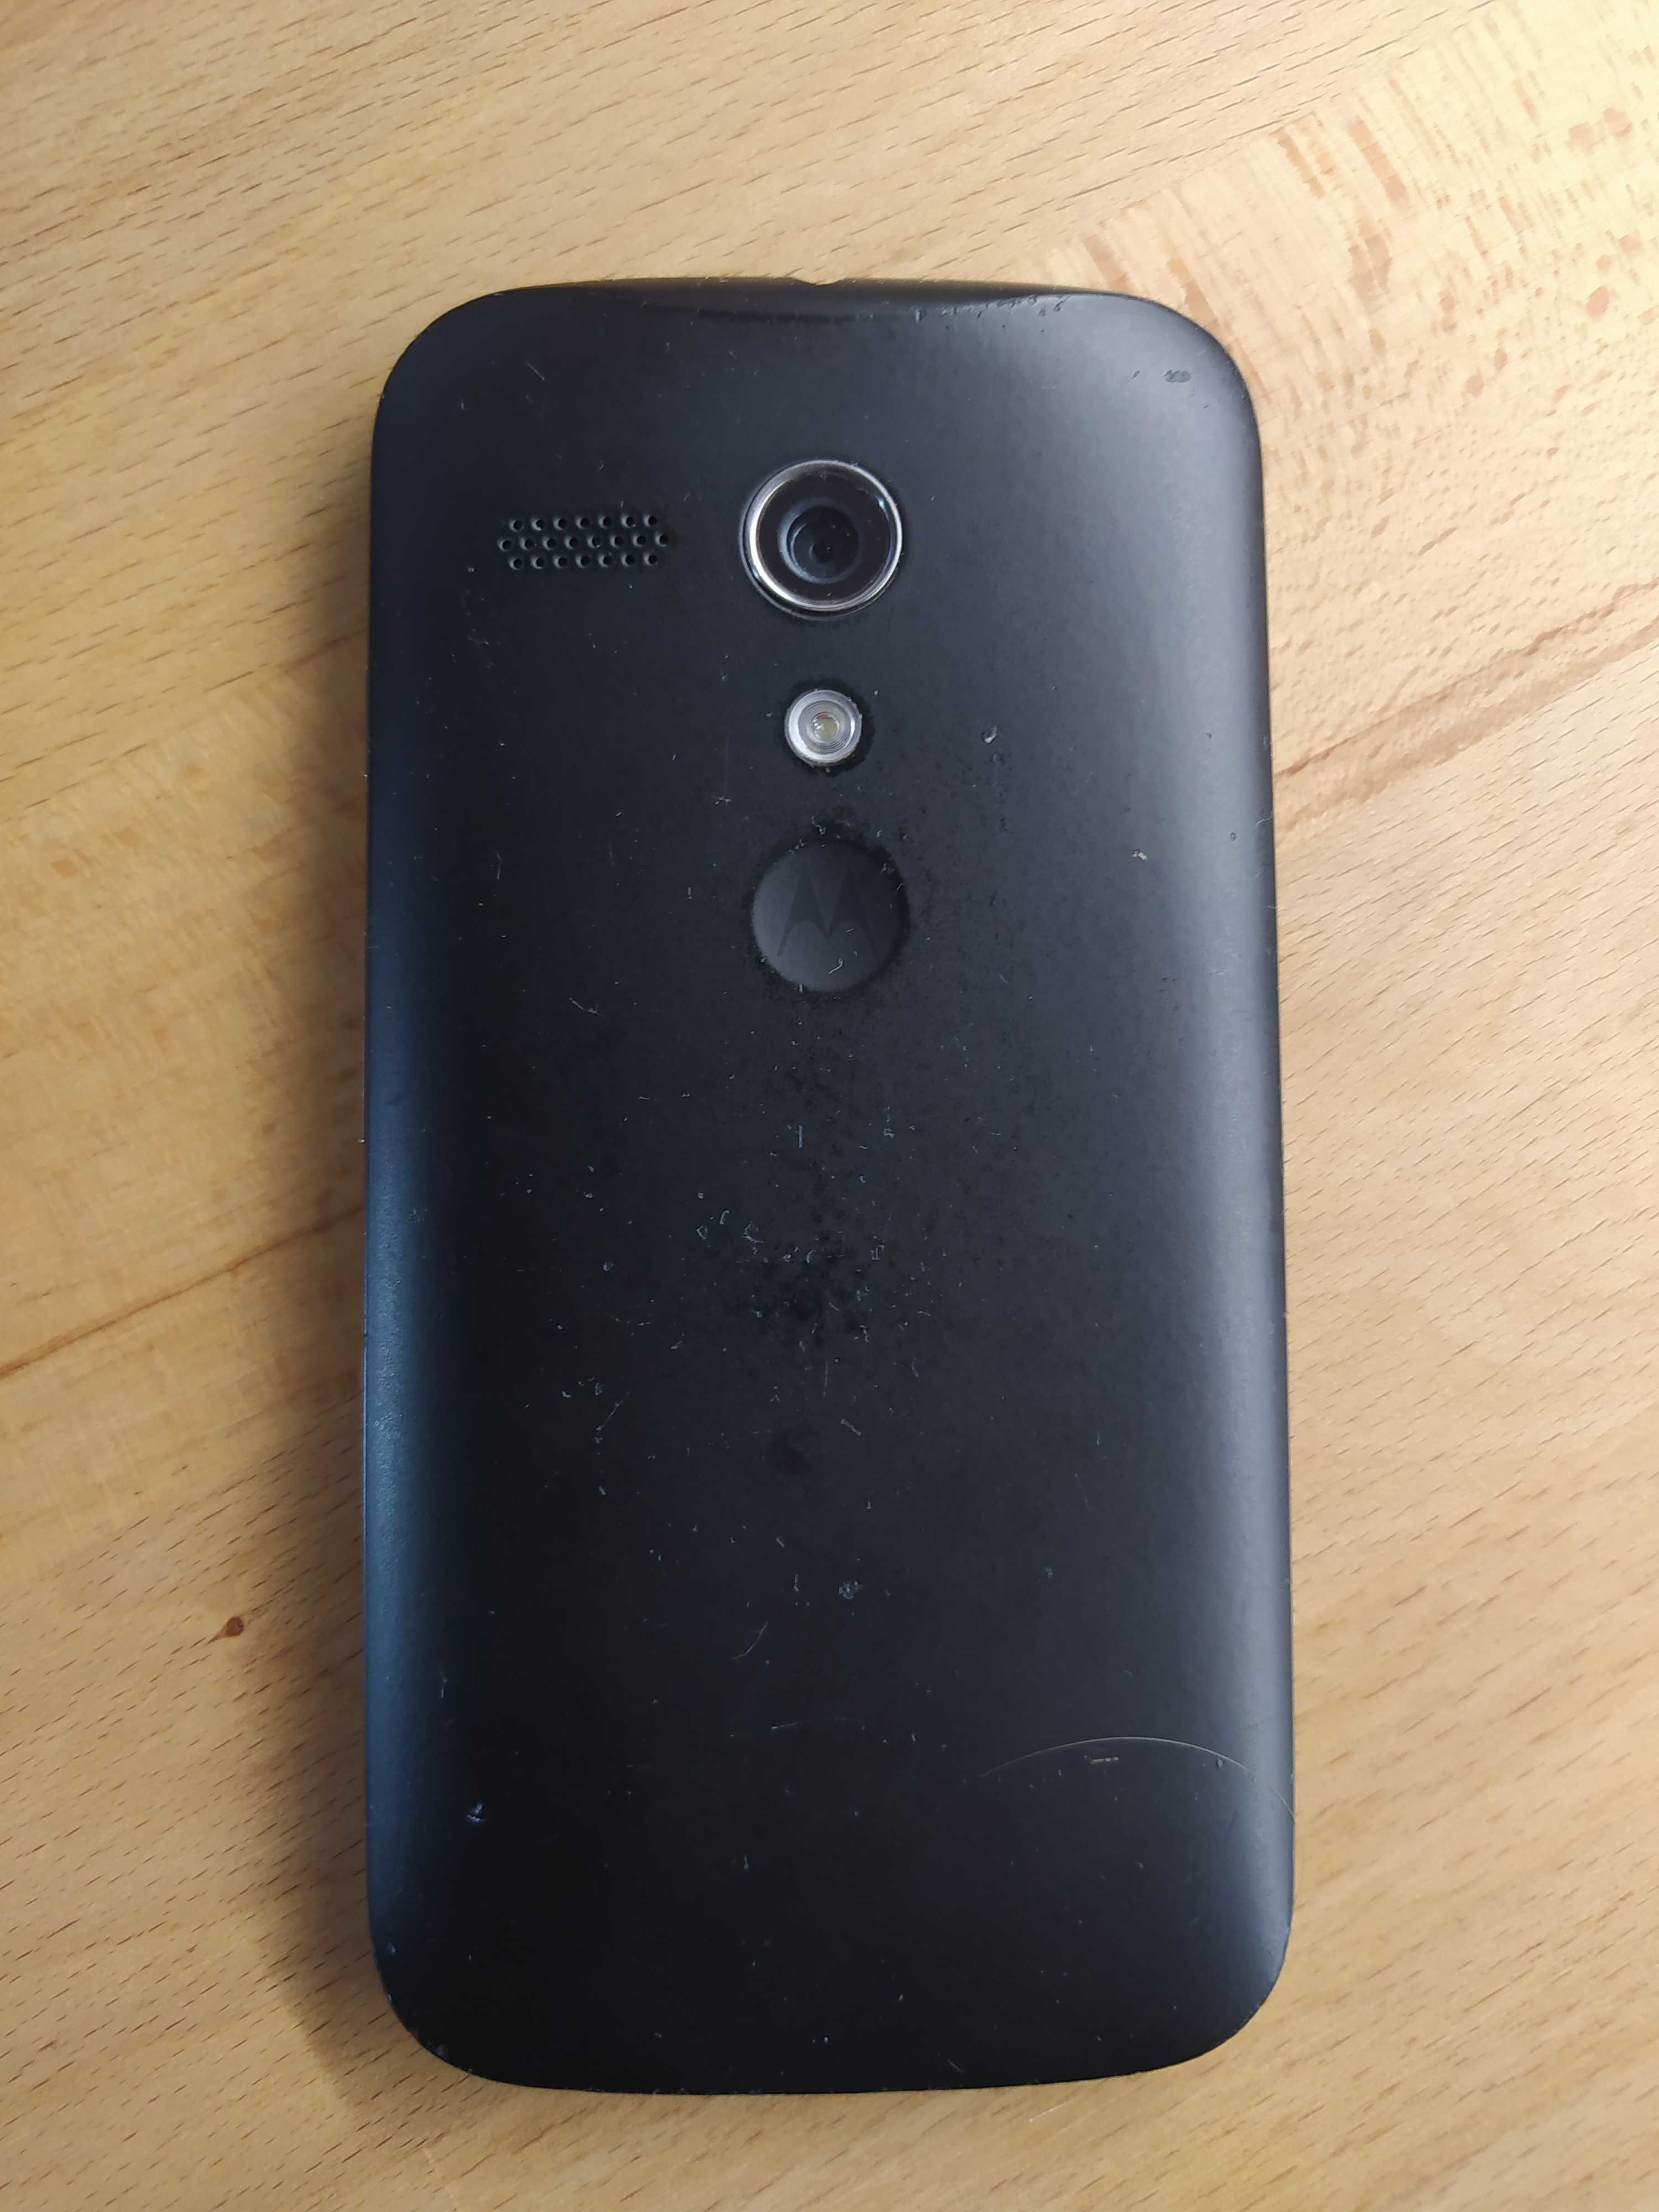 Motorola Moto G (XT1032) 8GB